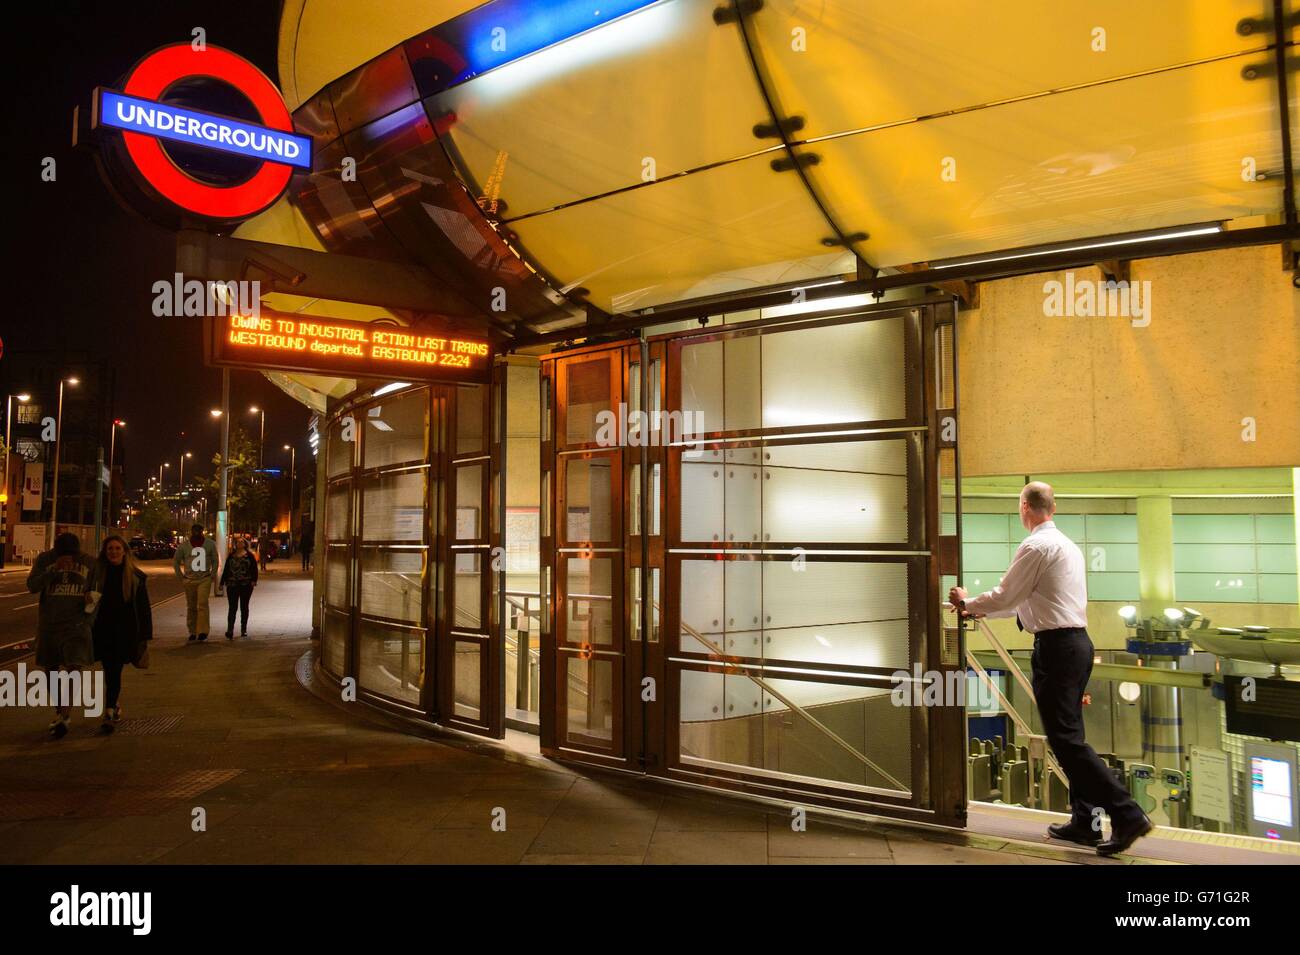 Un membro del personale chiude le persiane alla stazione della metropolitana di Southwark, nel centro di Londra, all'inizio di 48 ore di attività industriale da parte dei membri del sindacato RMT che interessano la metropolitana di Londra in una fila sopra la chiusura della biglietteria. Foto Stock